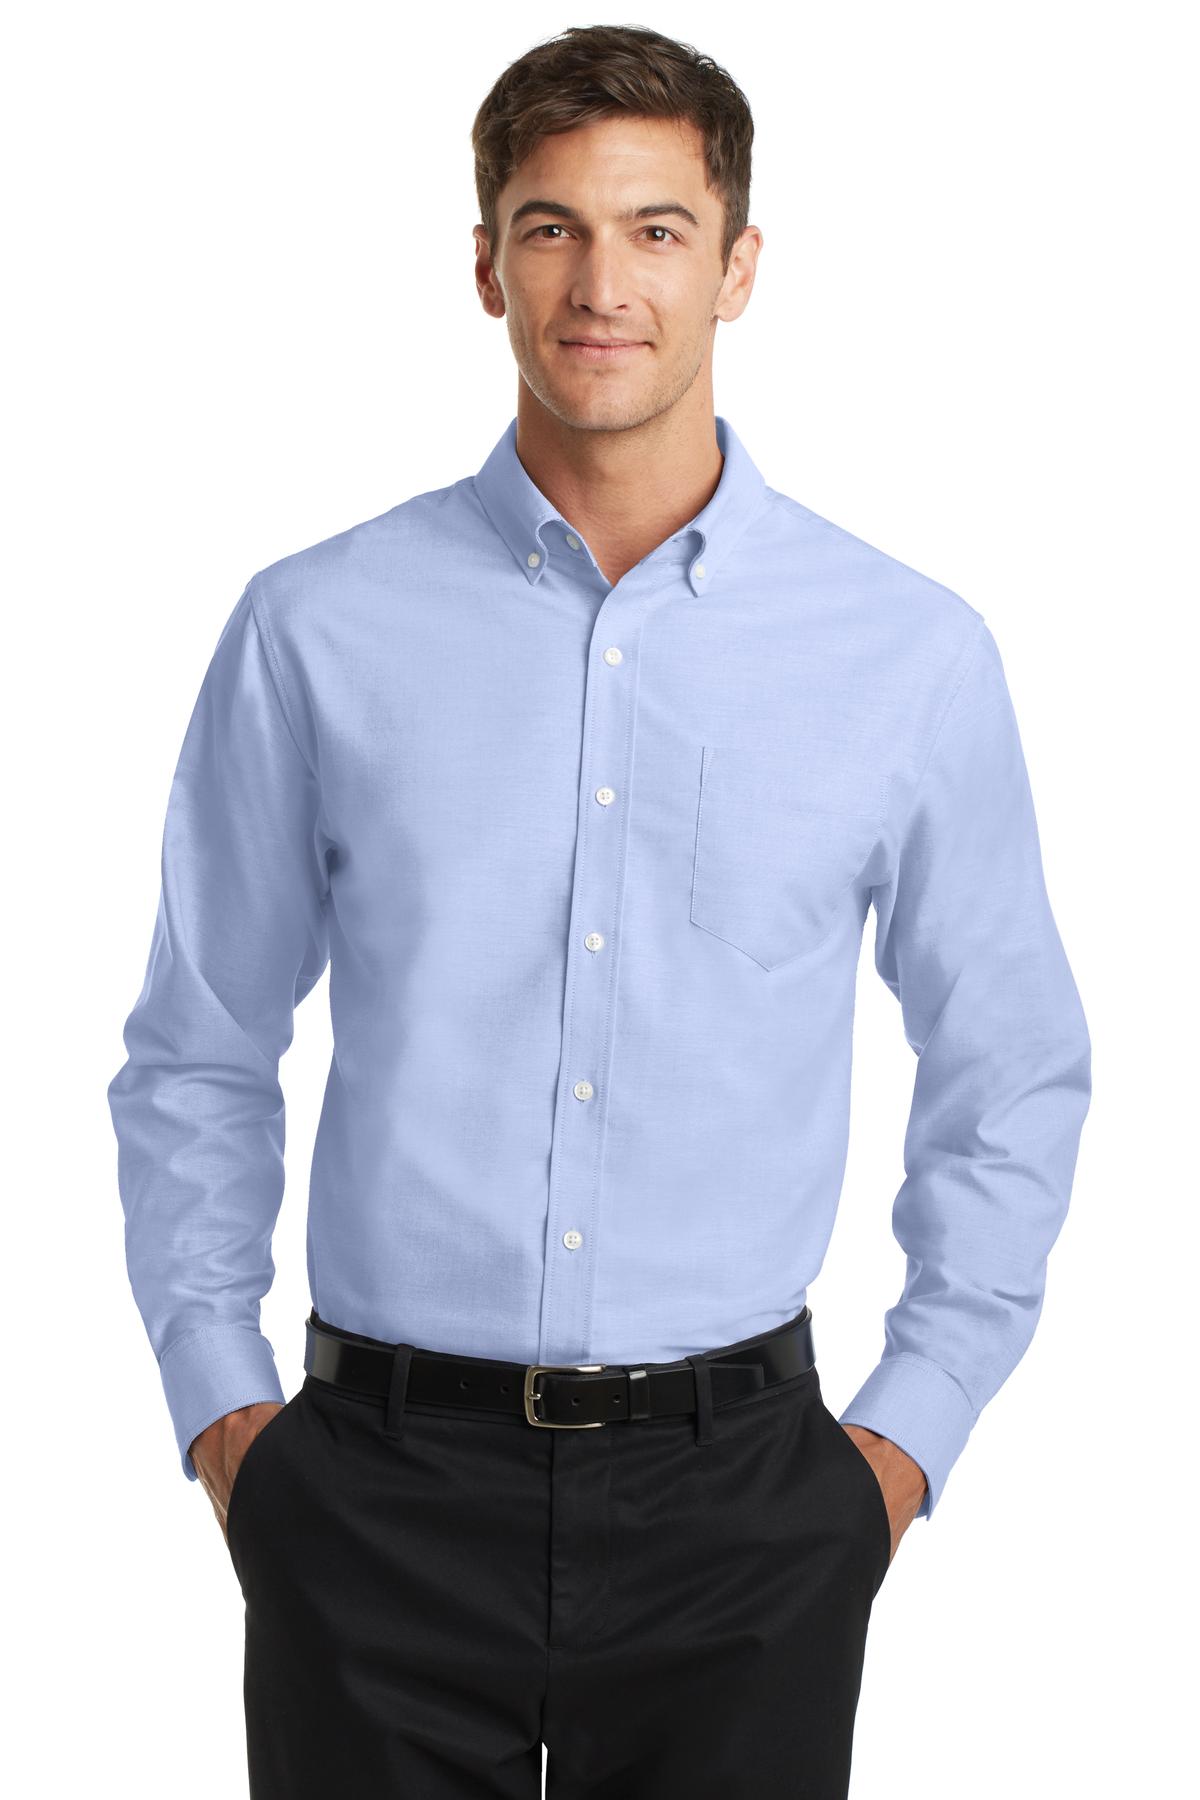 oxford shirt s658-oxford blue mafjfok